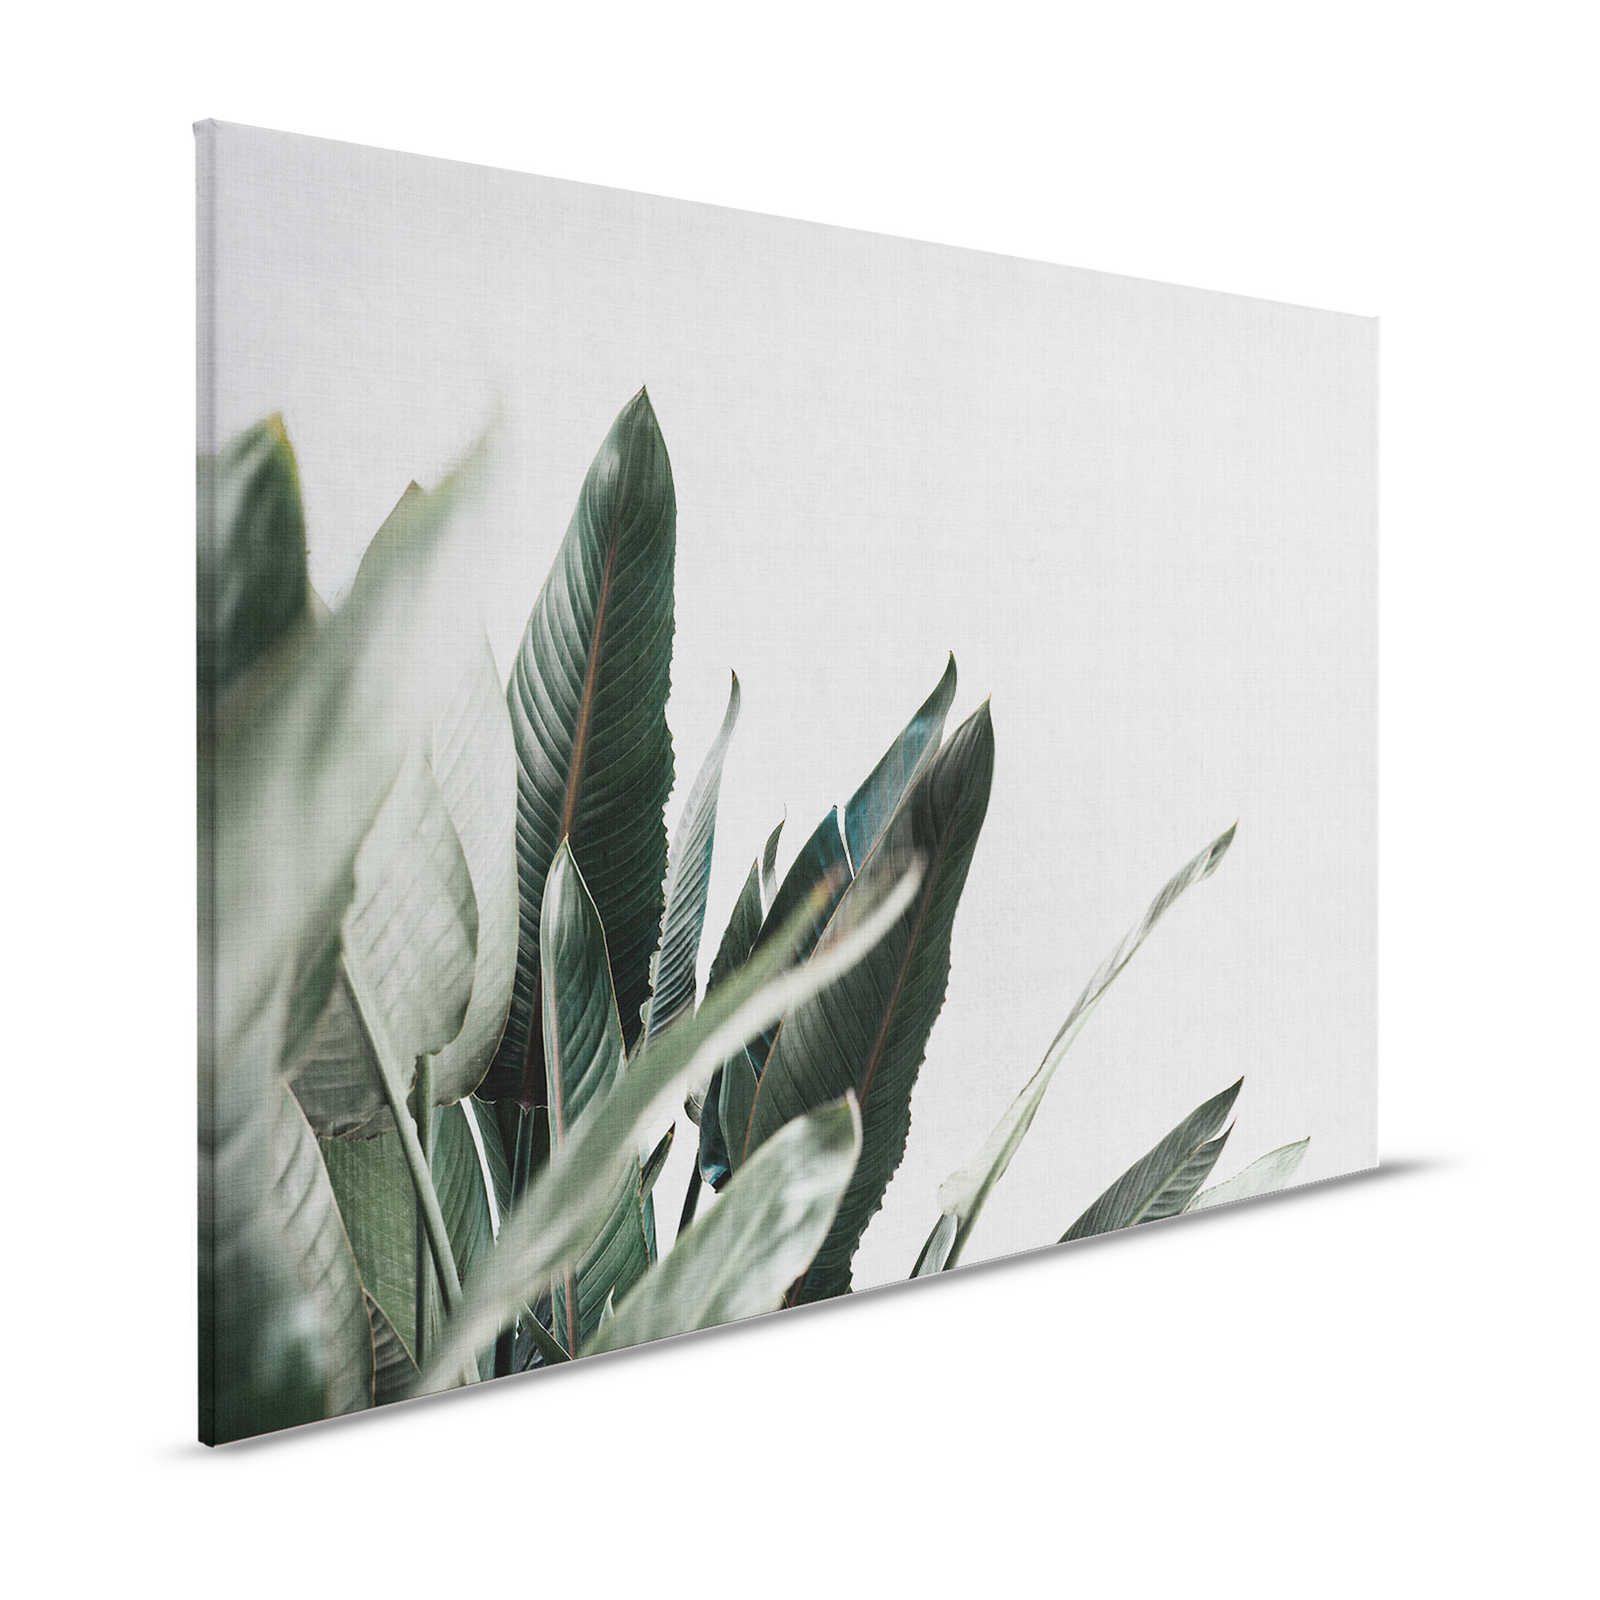 Urban jungle 1 - Tableau toile avec feuilles de palmier en lin naturel - 1,20 m x 0,80 m
